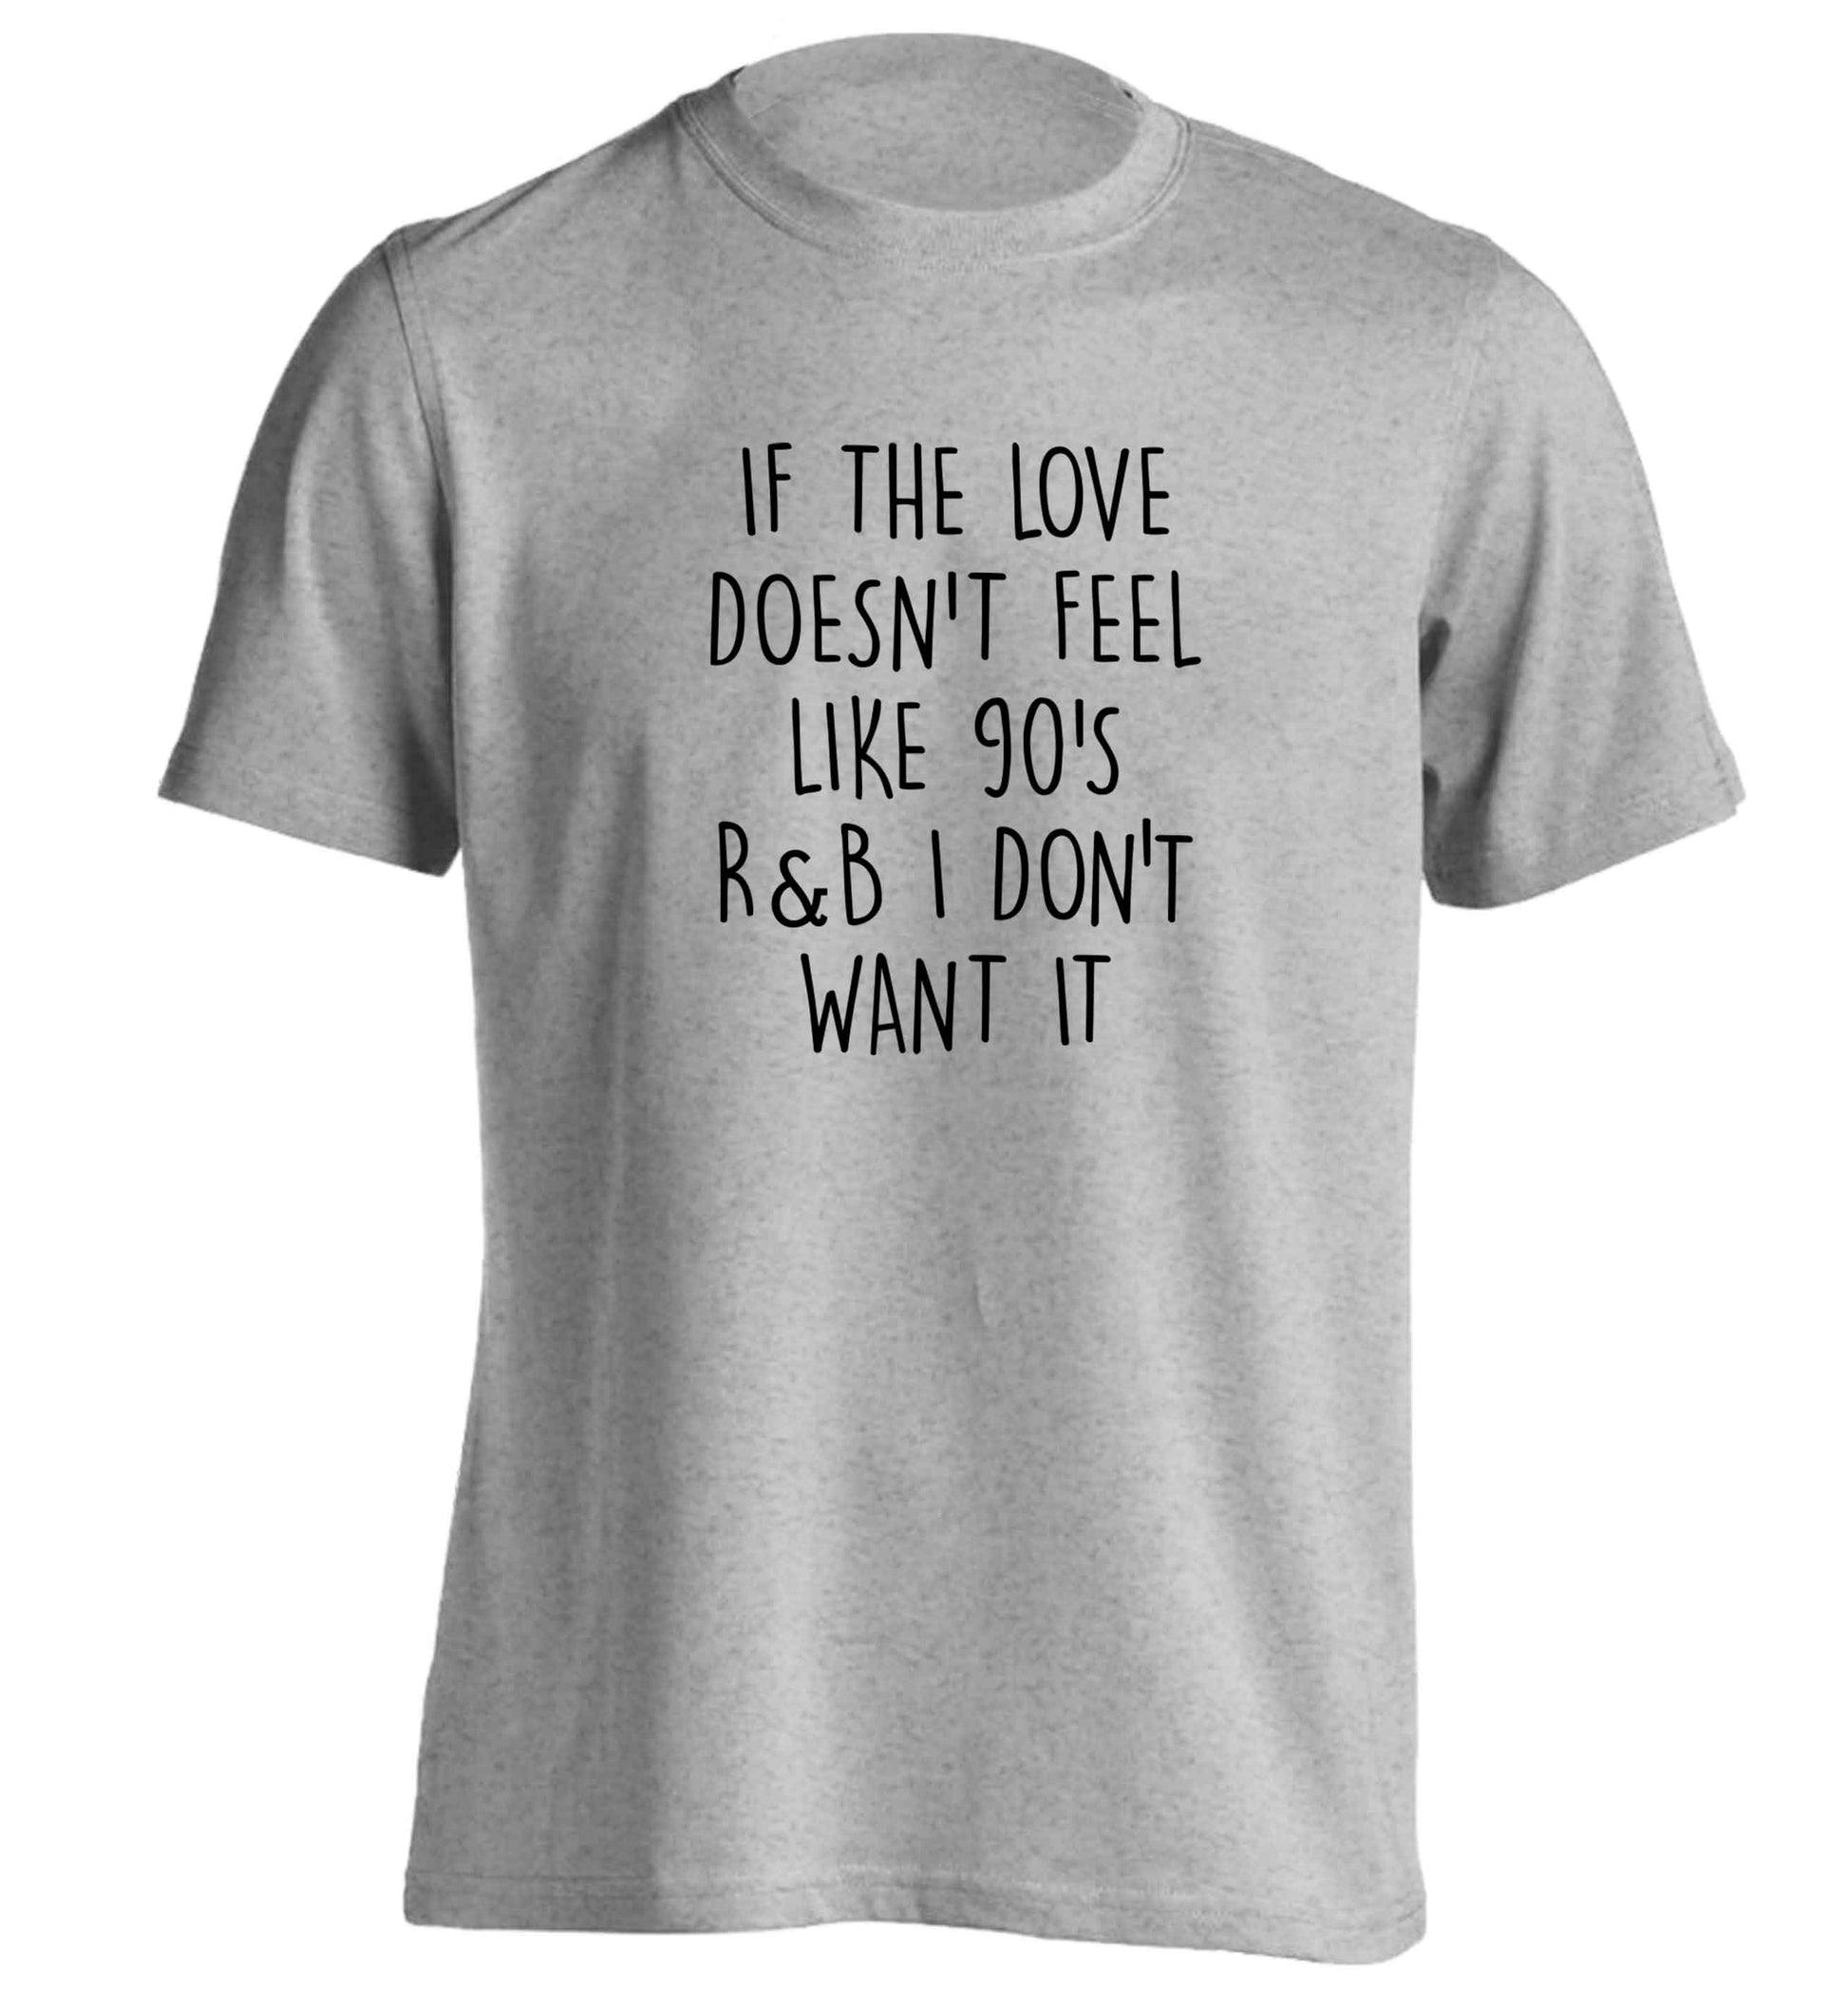 If the love doesn't feel like 90's r&b I don't want it adults unisex grey Tshirt 2XL